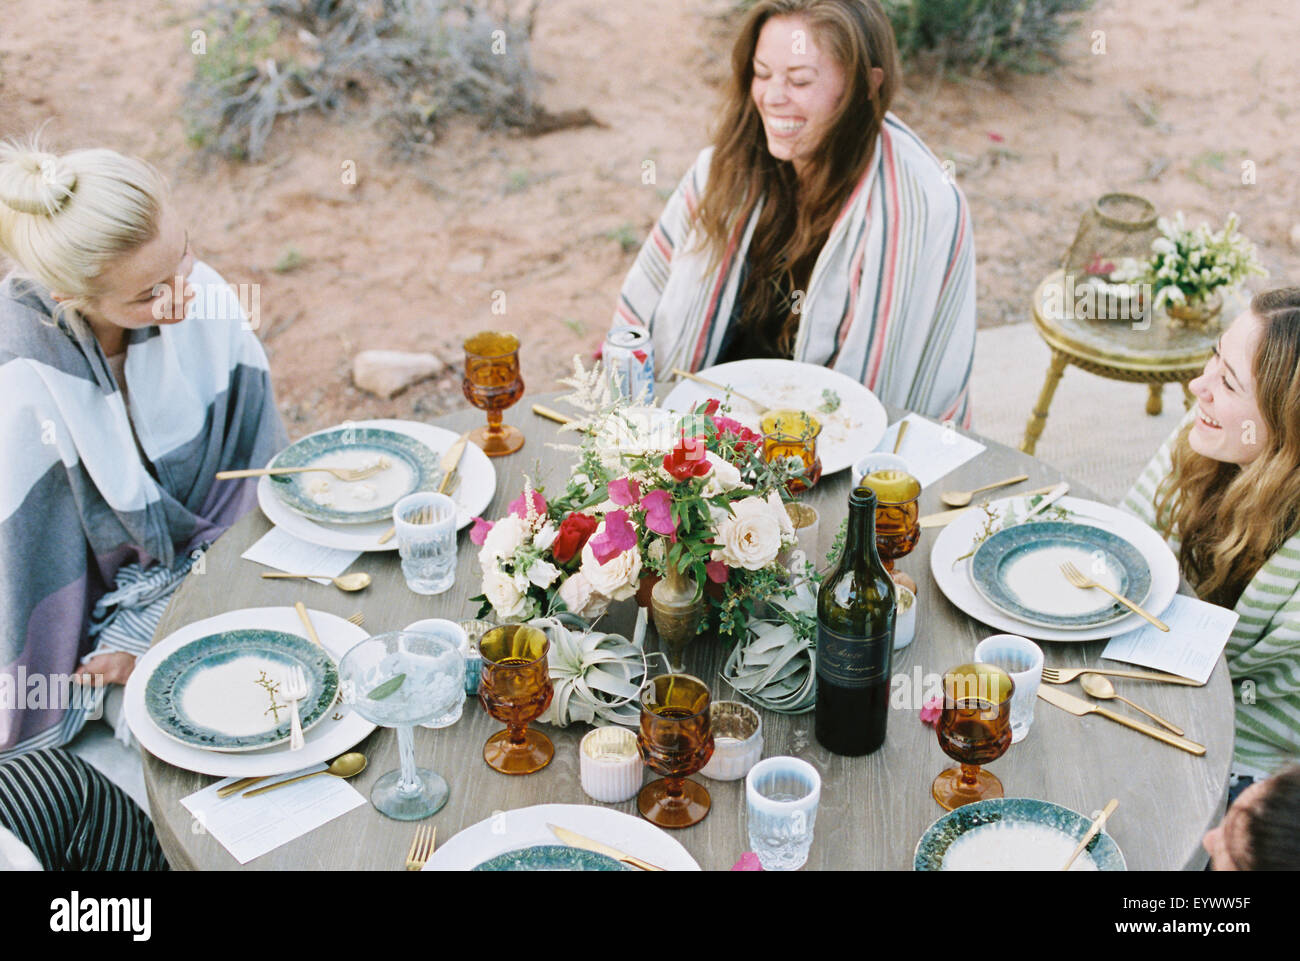 Eine kleine Gruppe von Frauen genießen eine Mahlzeit im Freien, in einer Wüste. Stockfoto